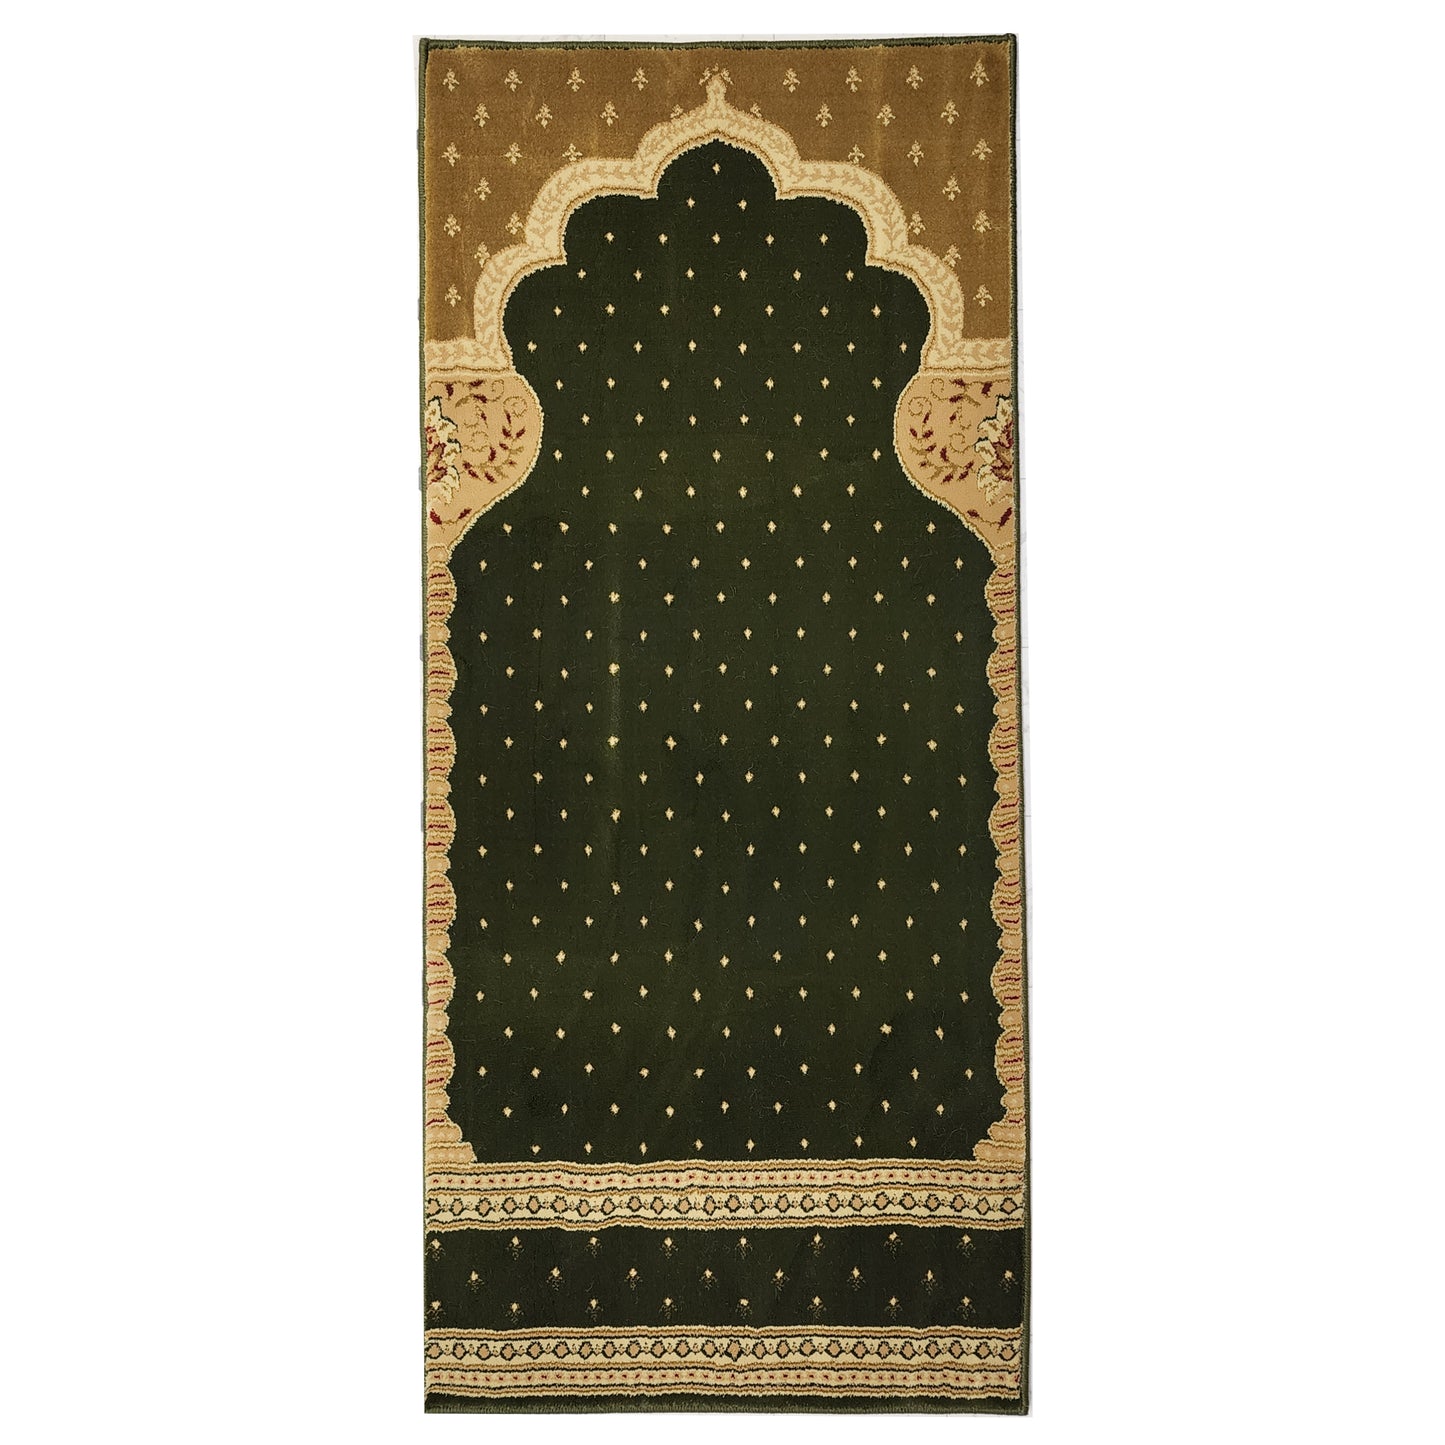 MADINA Green-Gold Single Prayer Carpet Mat